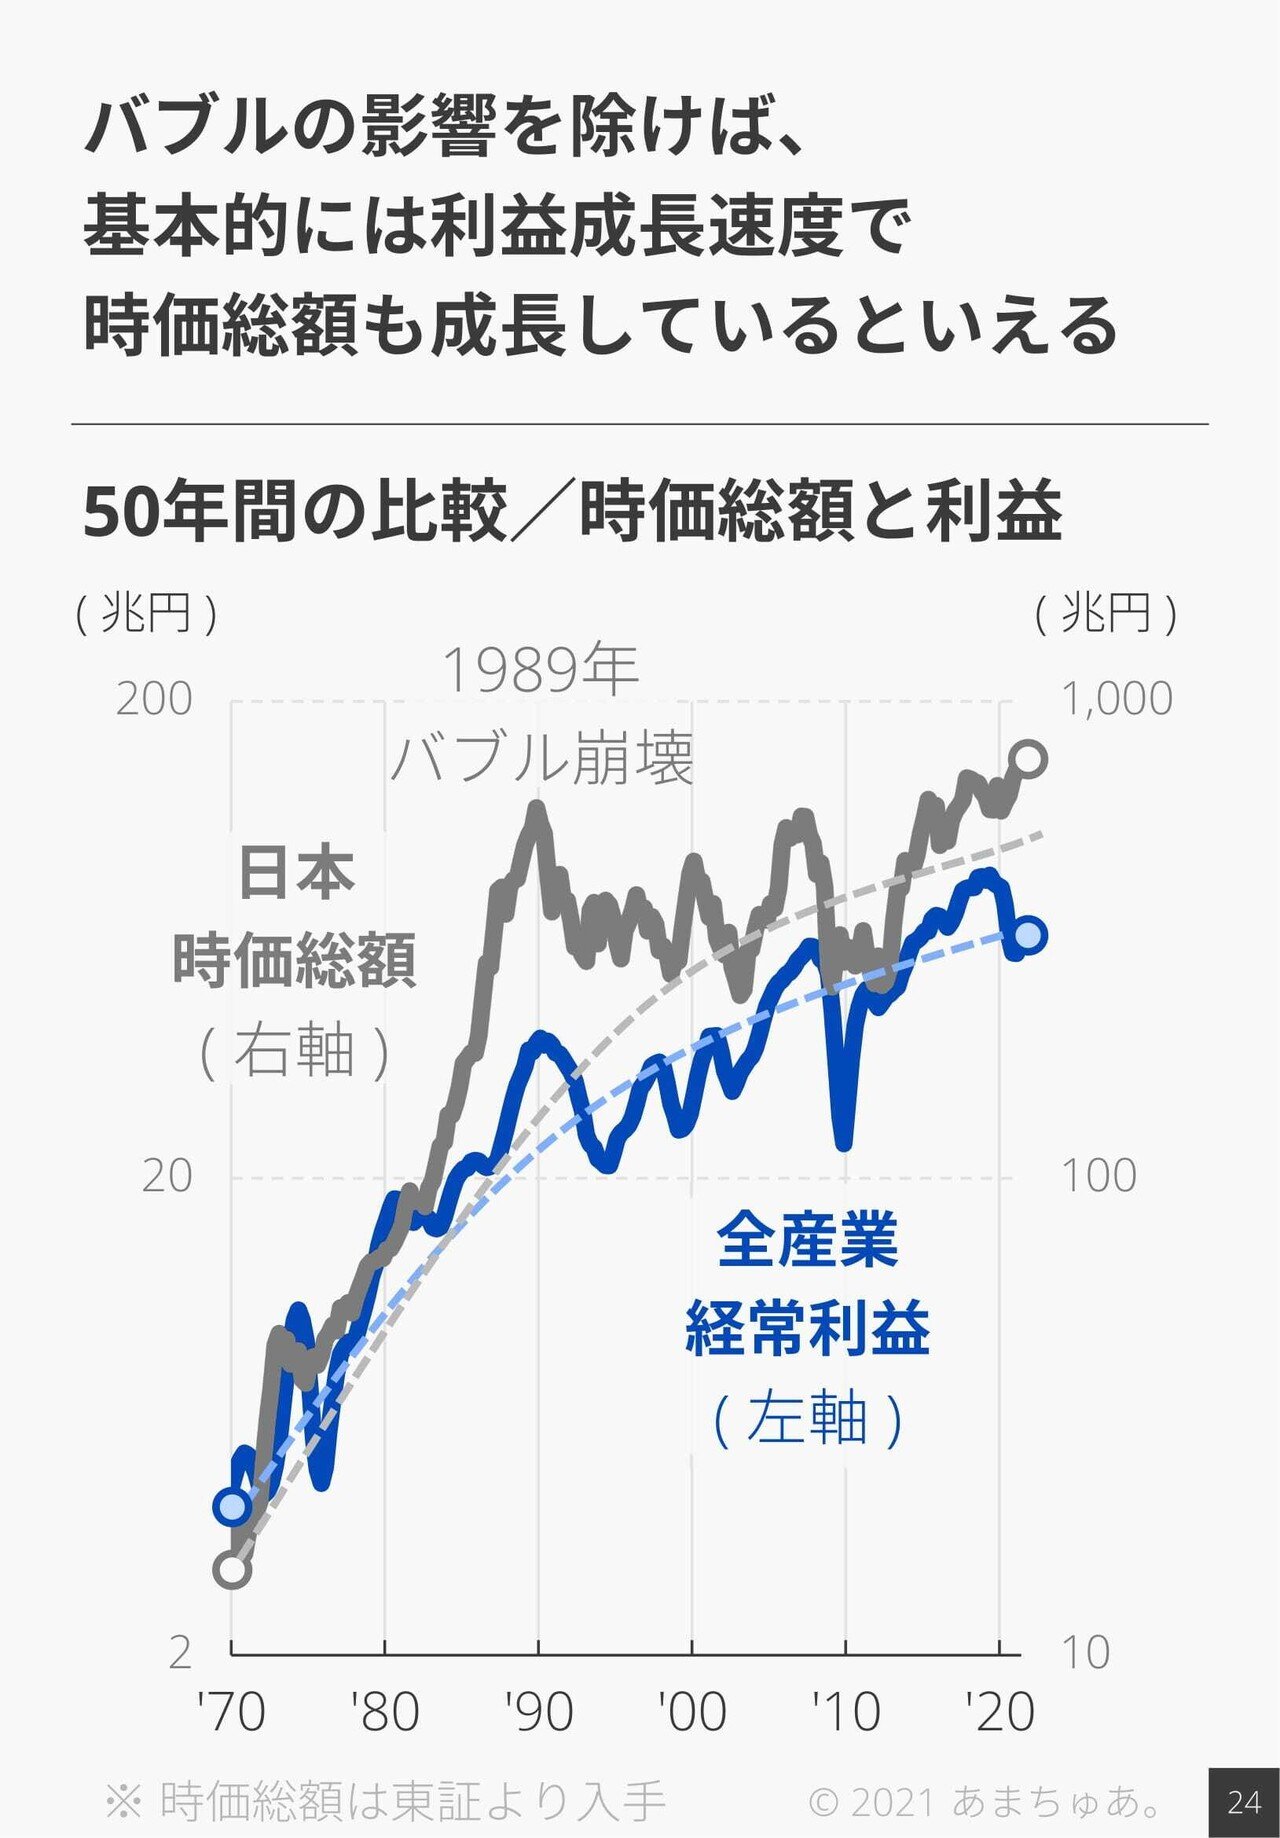 図解 / 経済分析】法人企業統計FY21/1Q ～日本のK字回復が鮮明に。どの